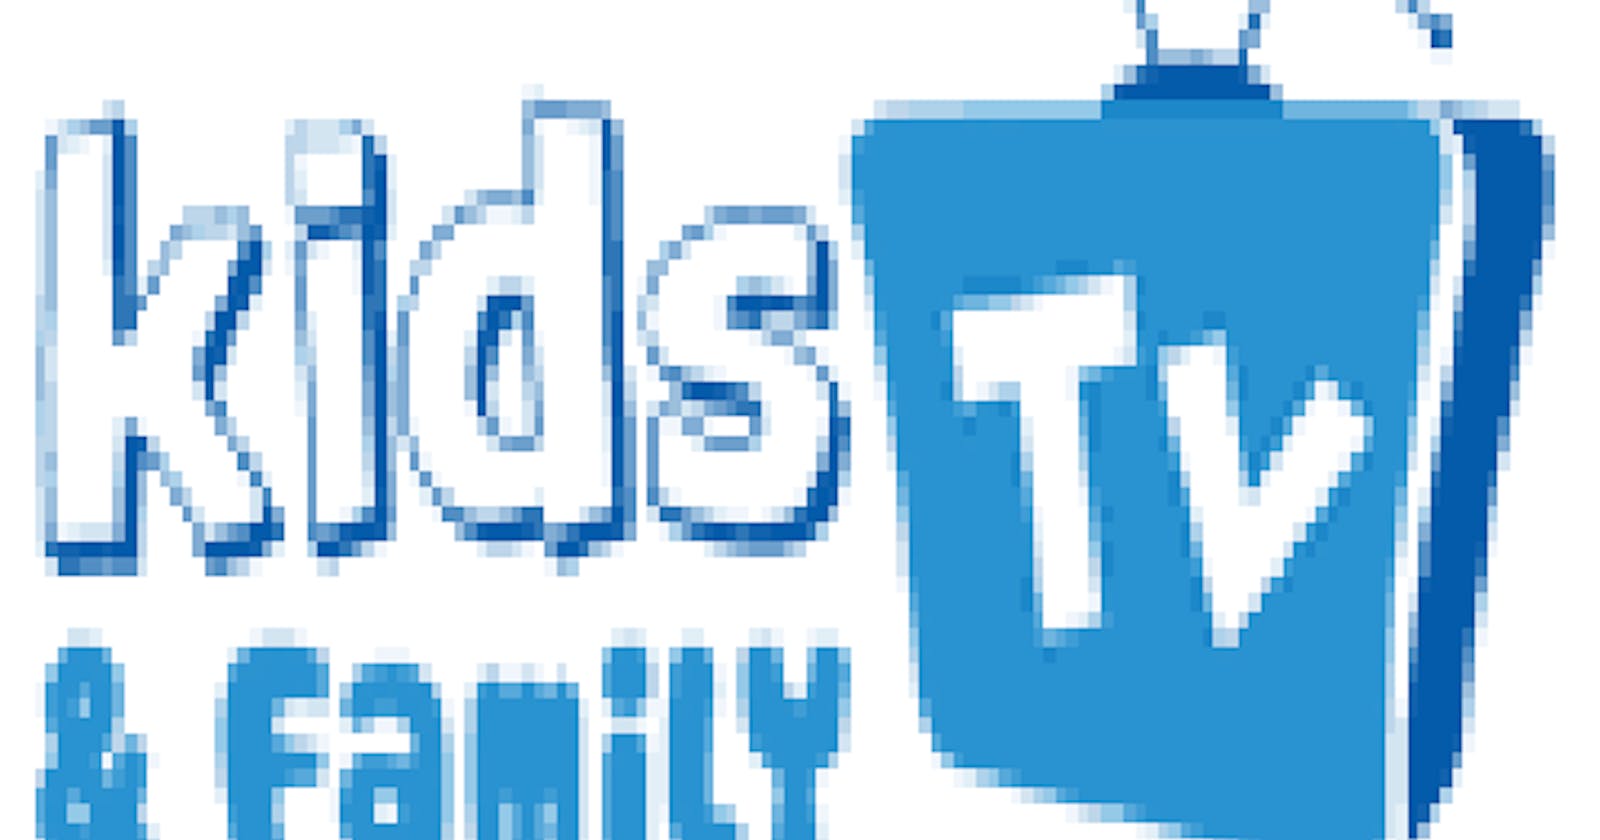 Kidstv And Family TV